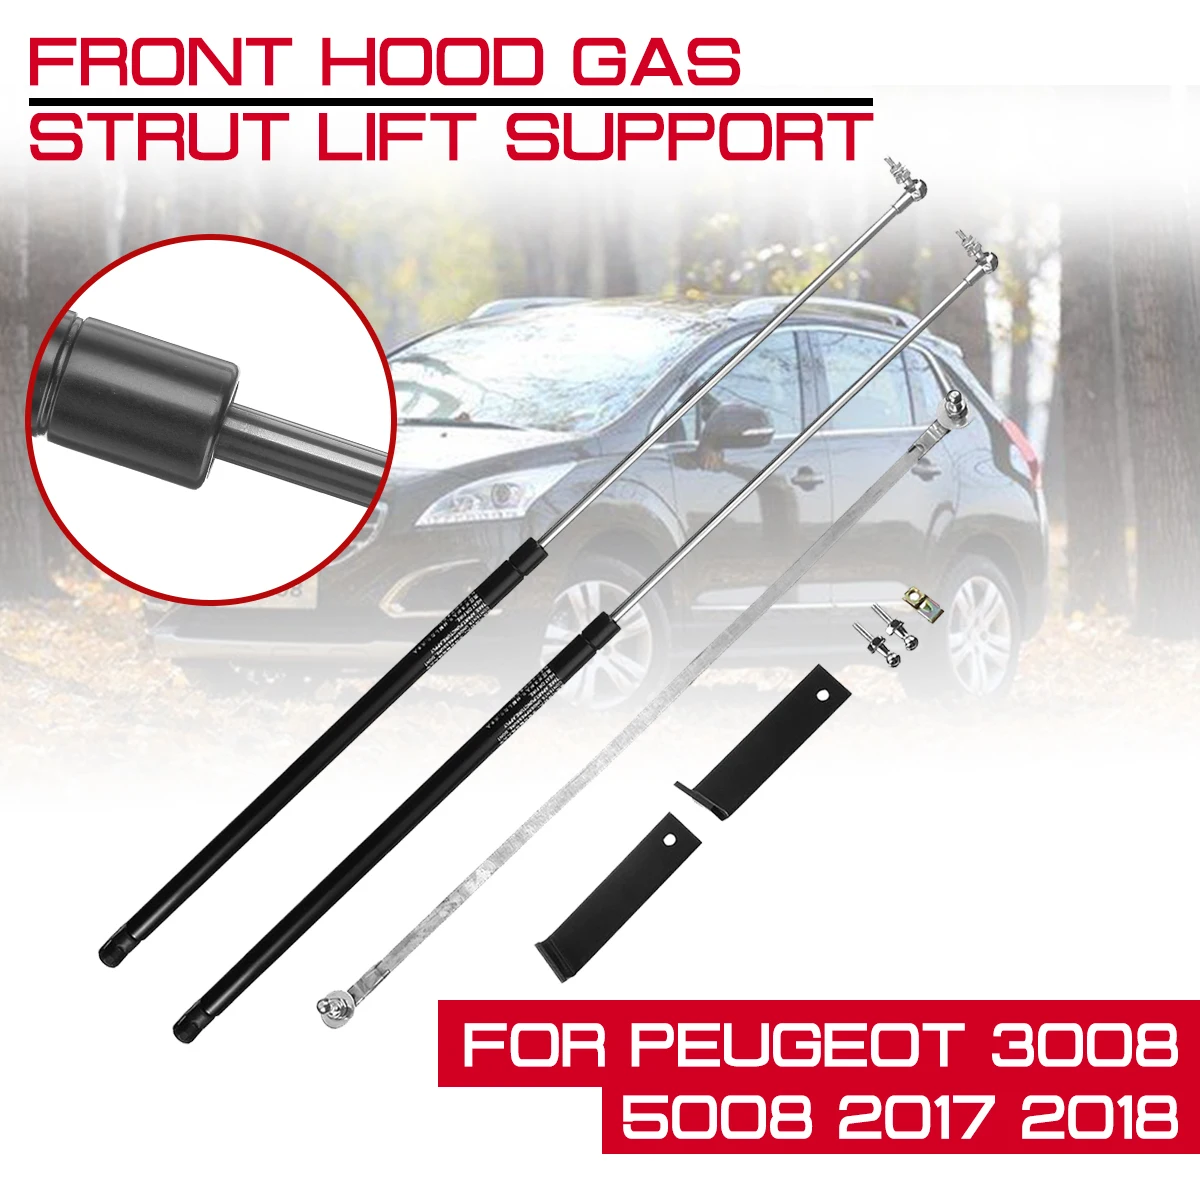 

Car Front Engine Cover Bonnet Hood Shock Lift Strut For Peugeot 3008 5008 2017 2018 Support Rod Arm Gas Spring Struts Bar